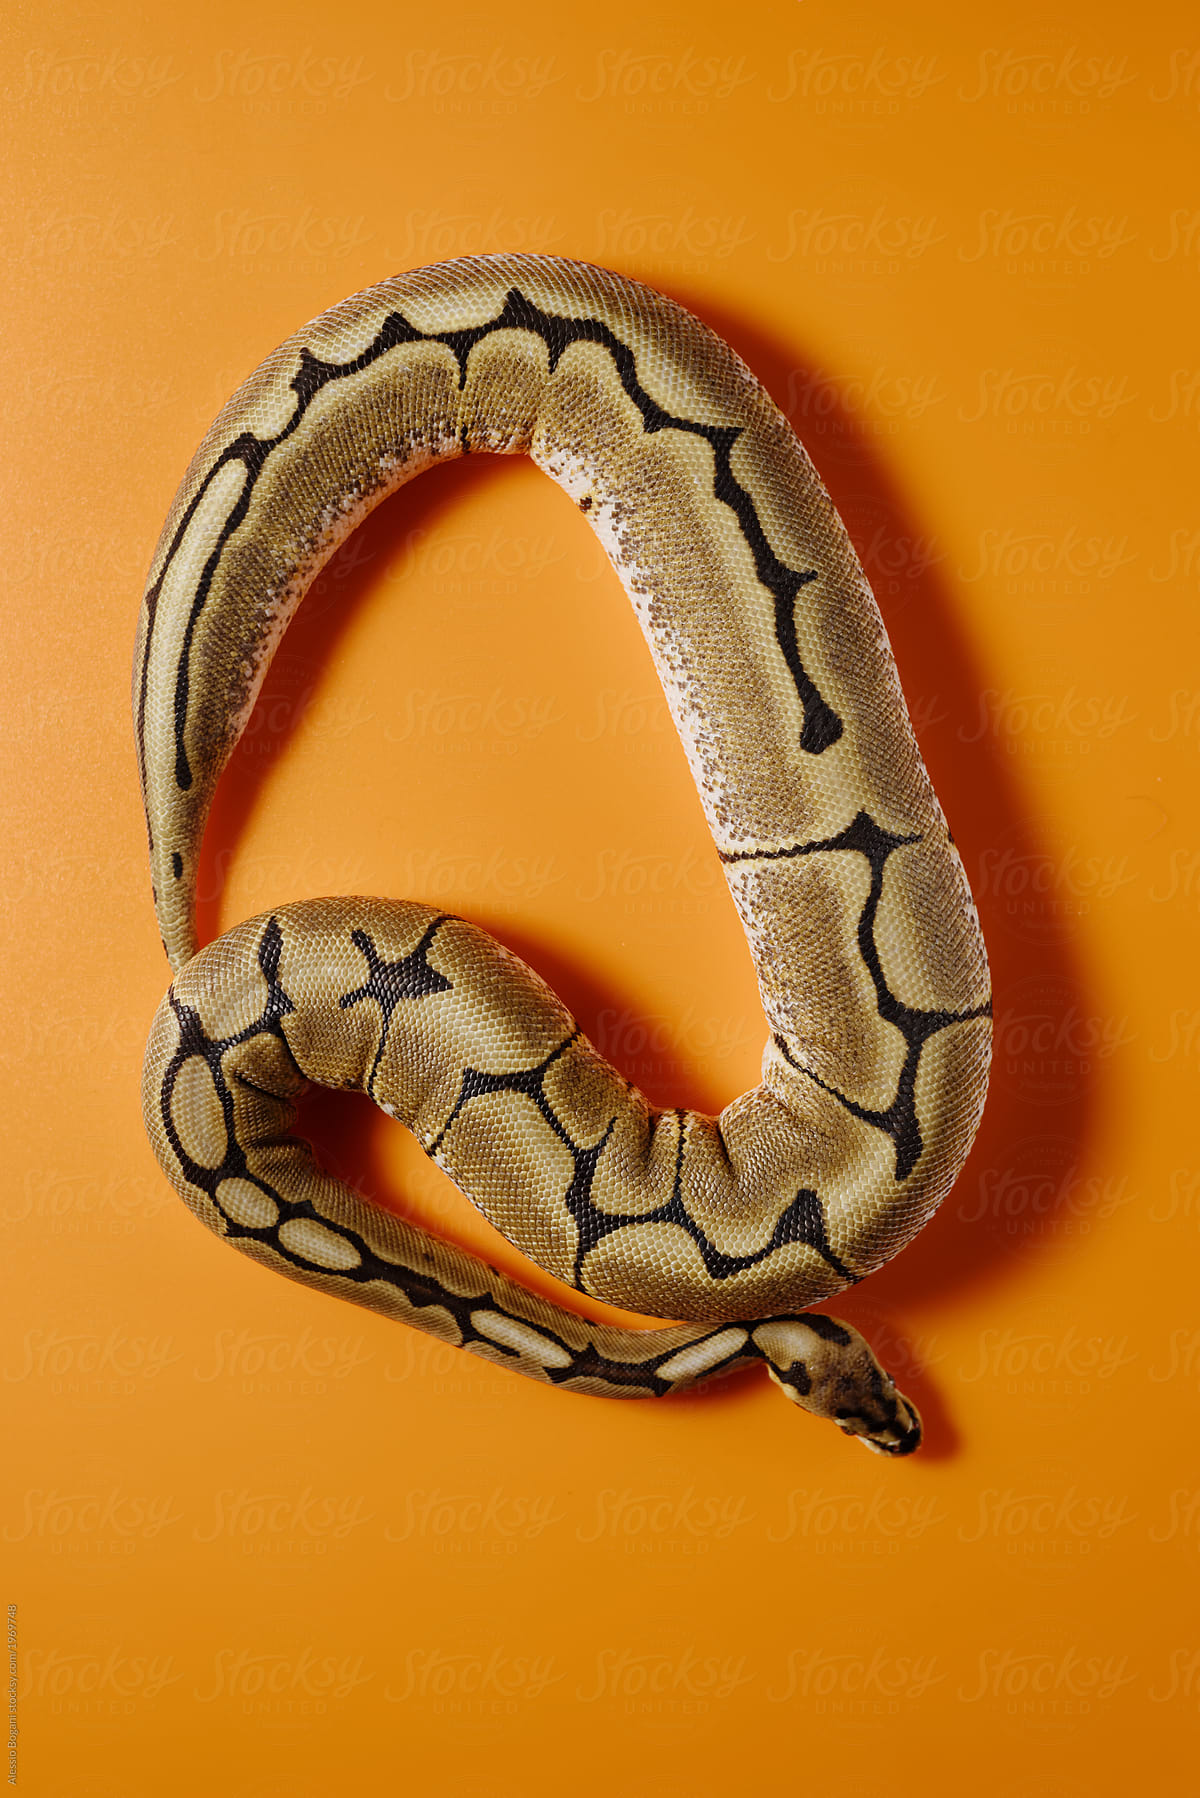 A Python